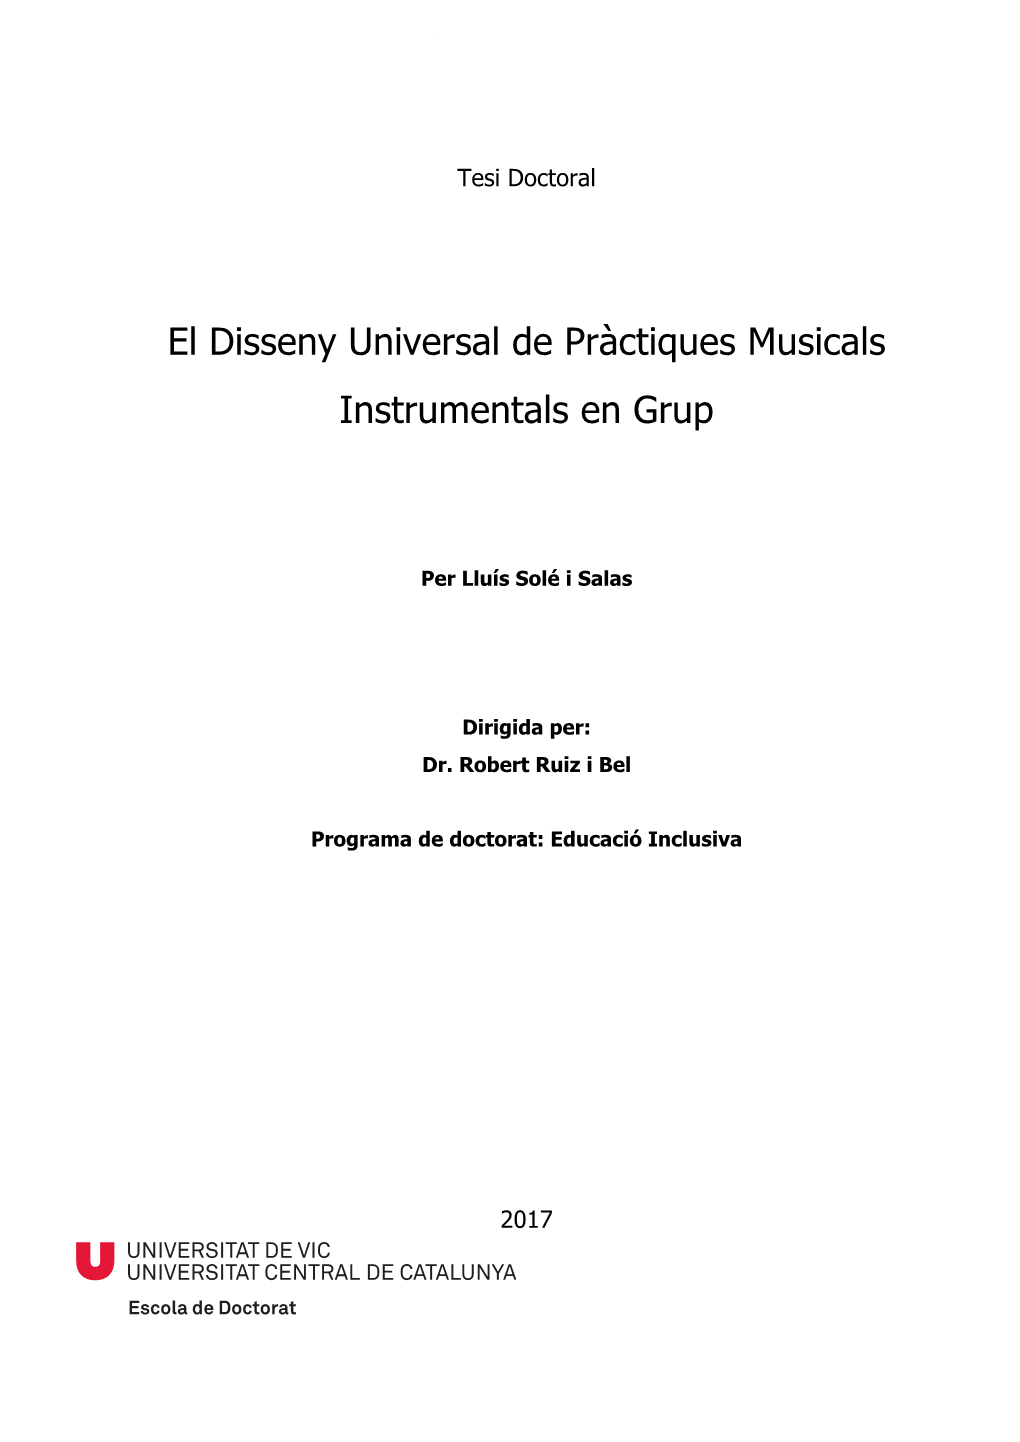 El Disseny Universal De Pràctiques Musicals Instrumentals En Grup